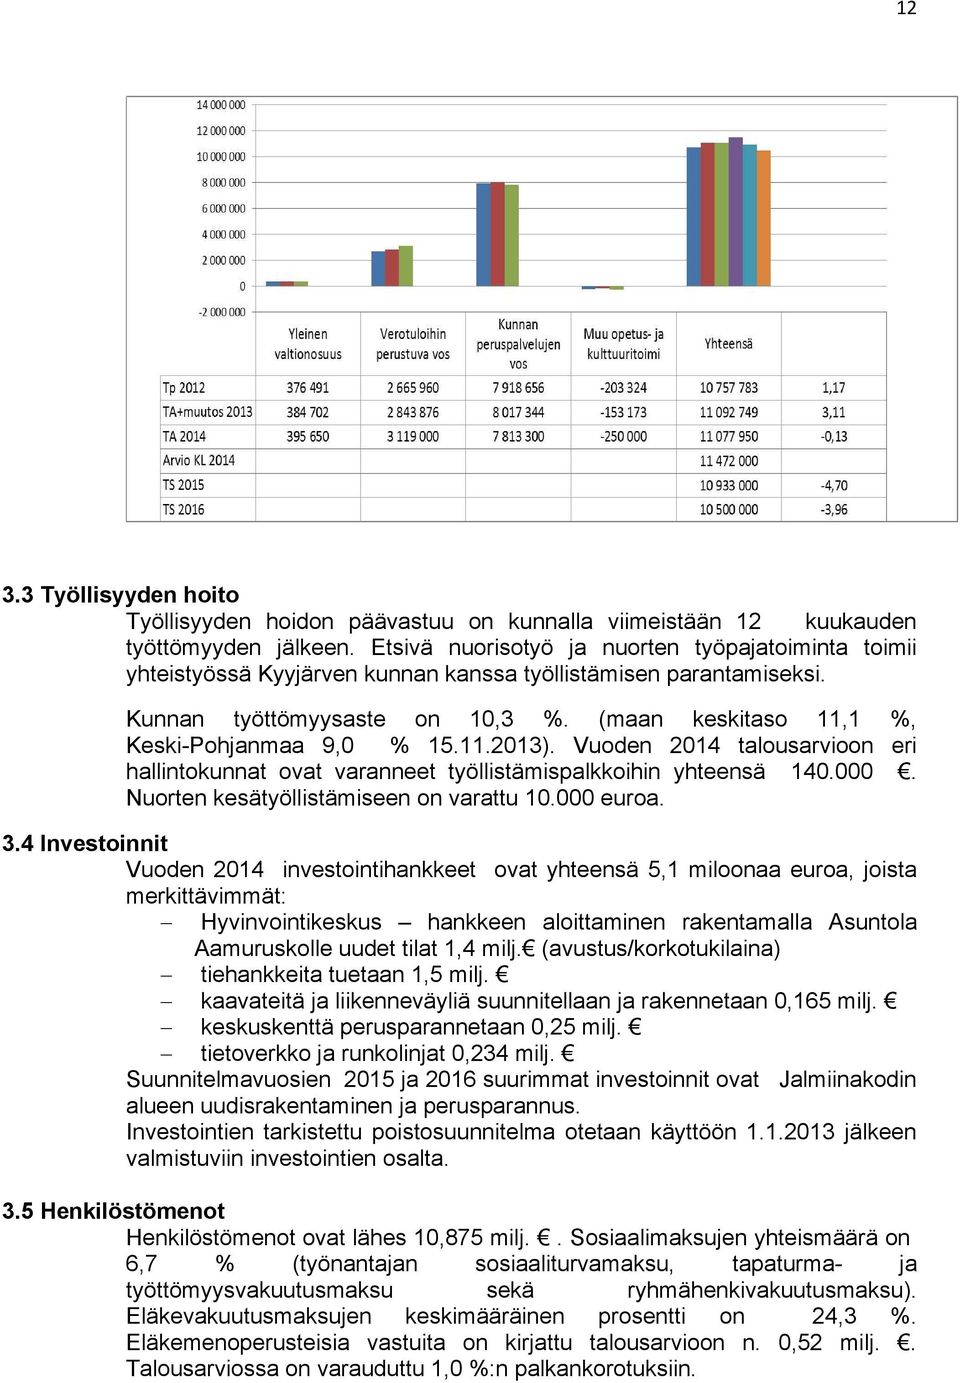 (maan keskitaso 11,1 %, Keski-Pohjanmaa 9,0 % 15.11.2013). Vuoden 2014 talousarvioon eri hallintokunnat ovat varanneet työllistämispalkkoihin yhteensä 140.000.